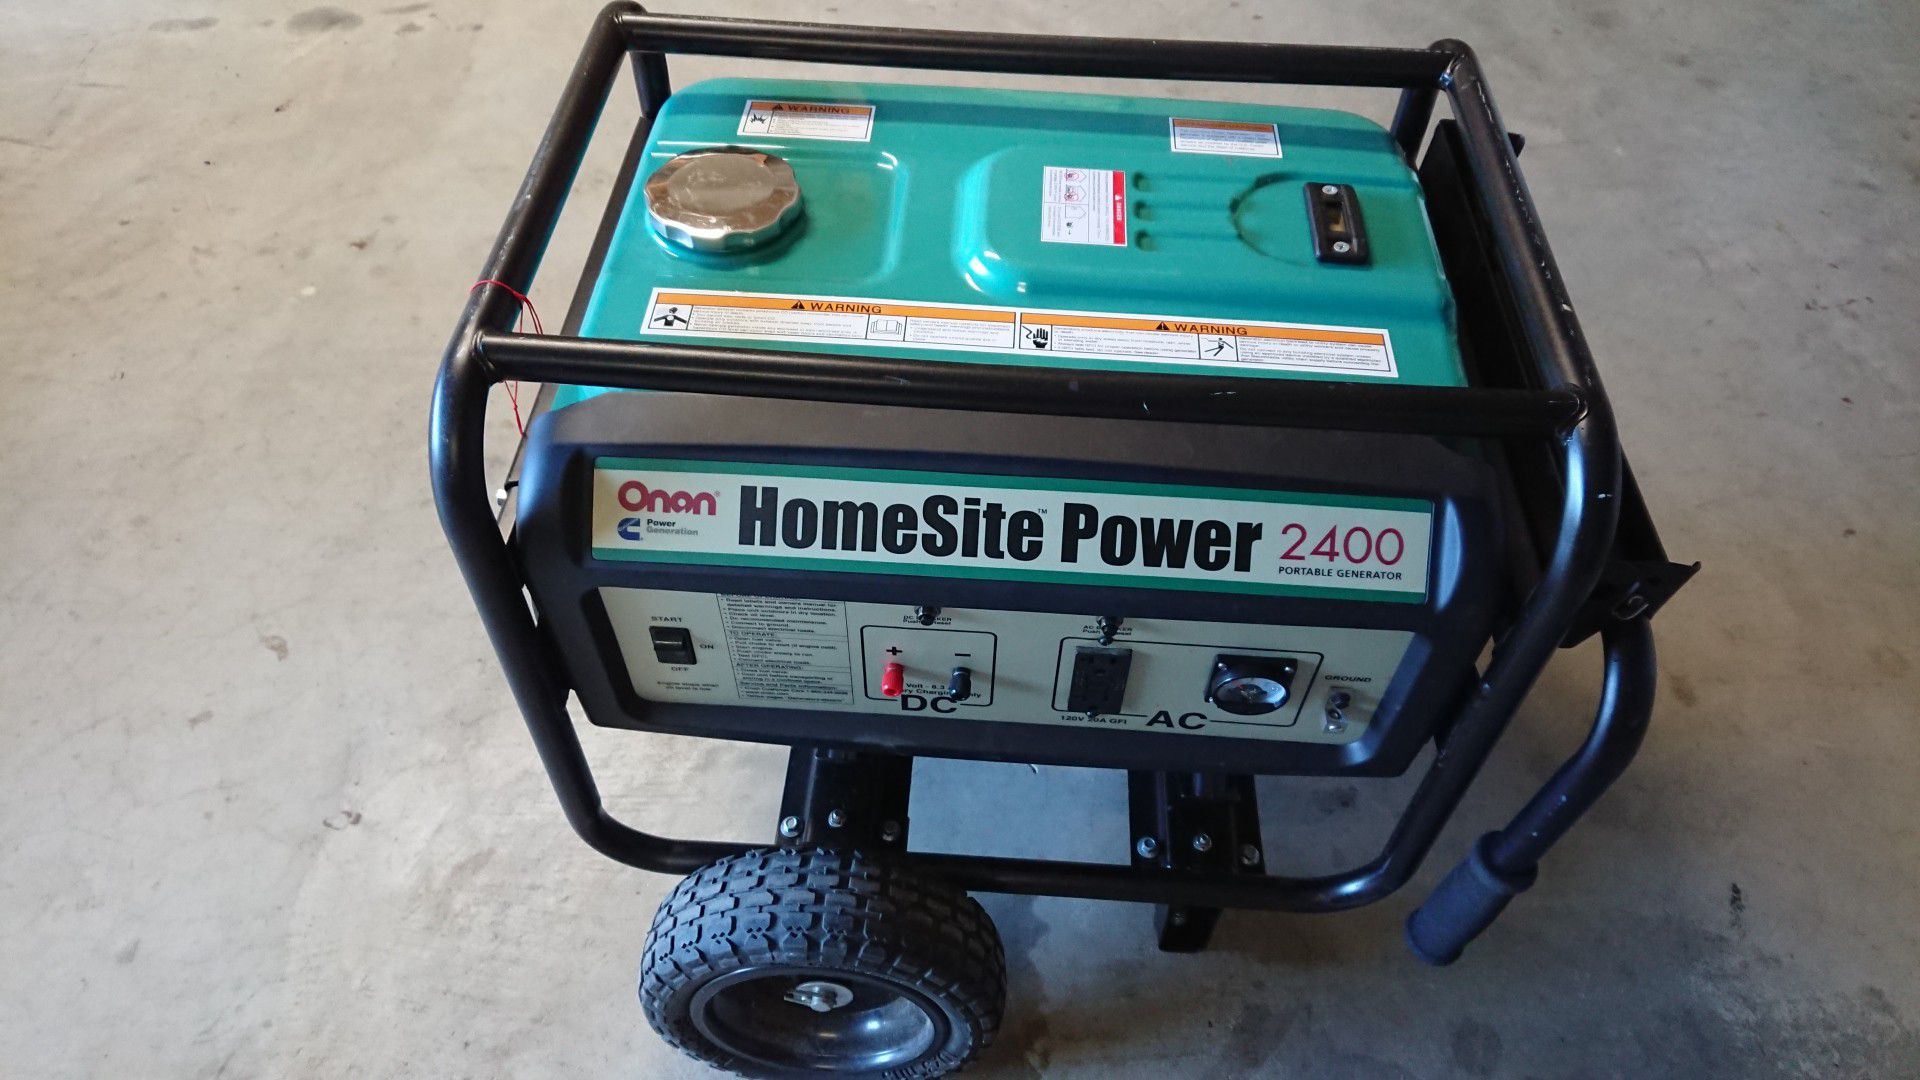 Onan homesite power 2400 generator